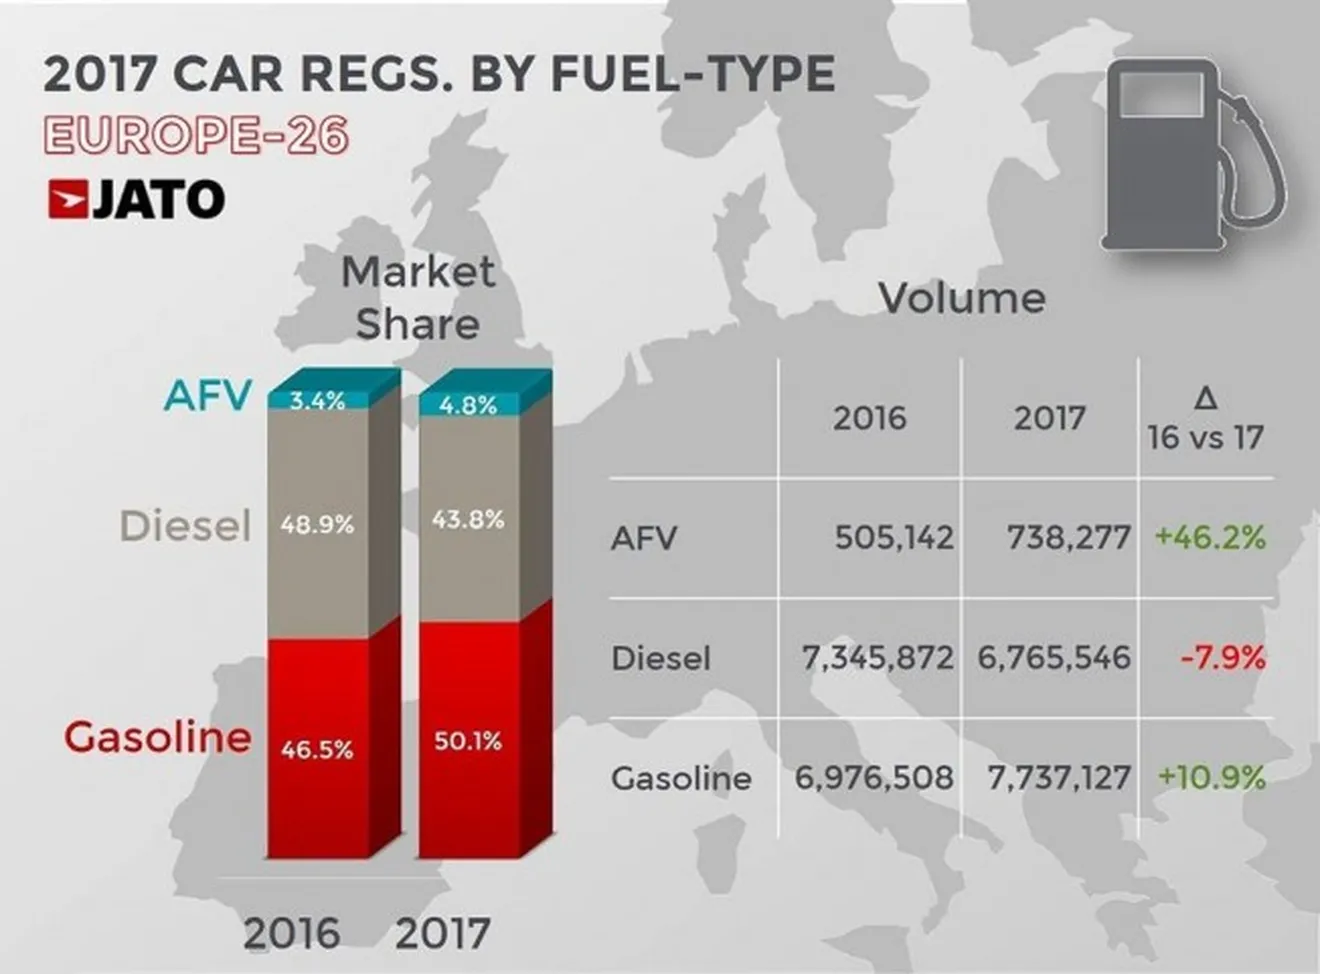 Ventas de coches en Europa en 2017 por tipo de combustible